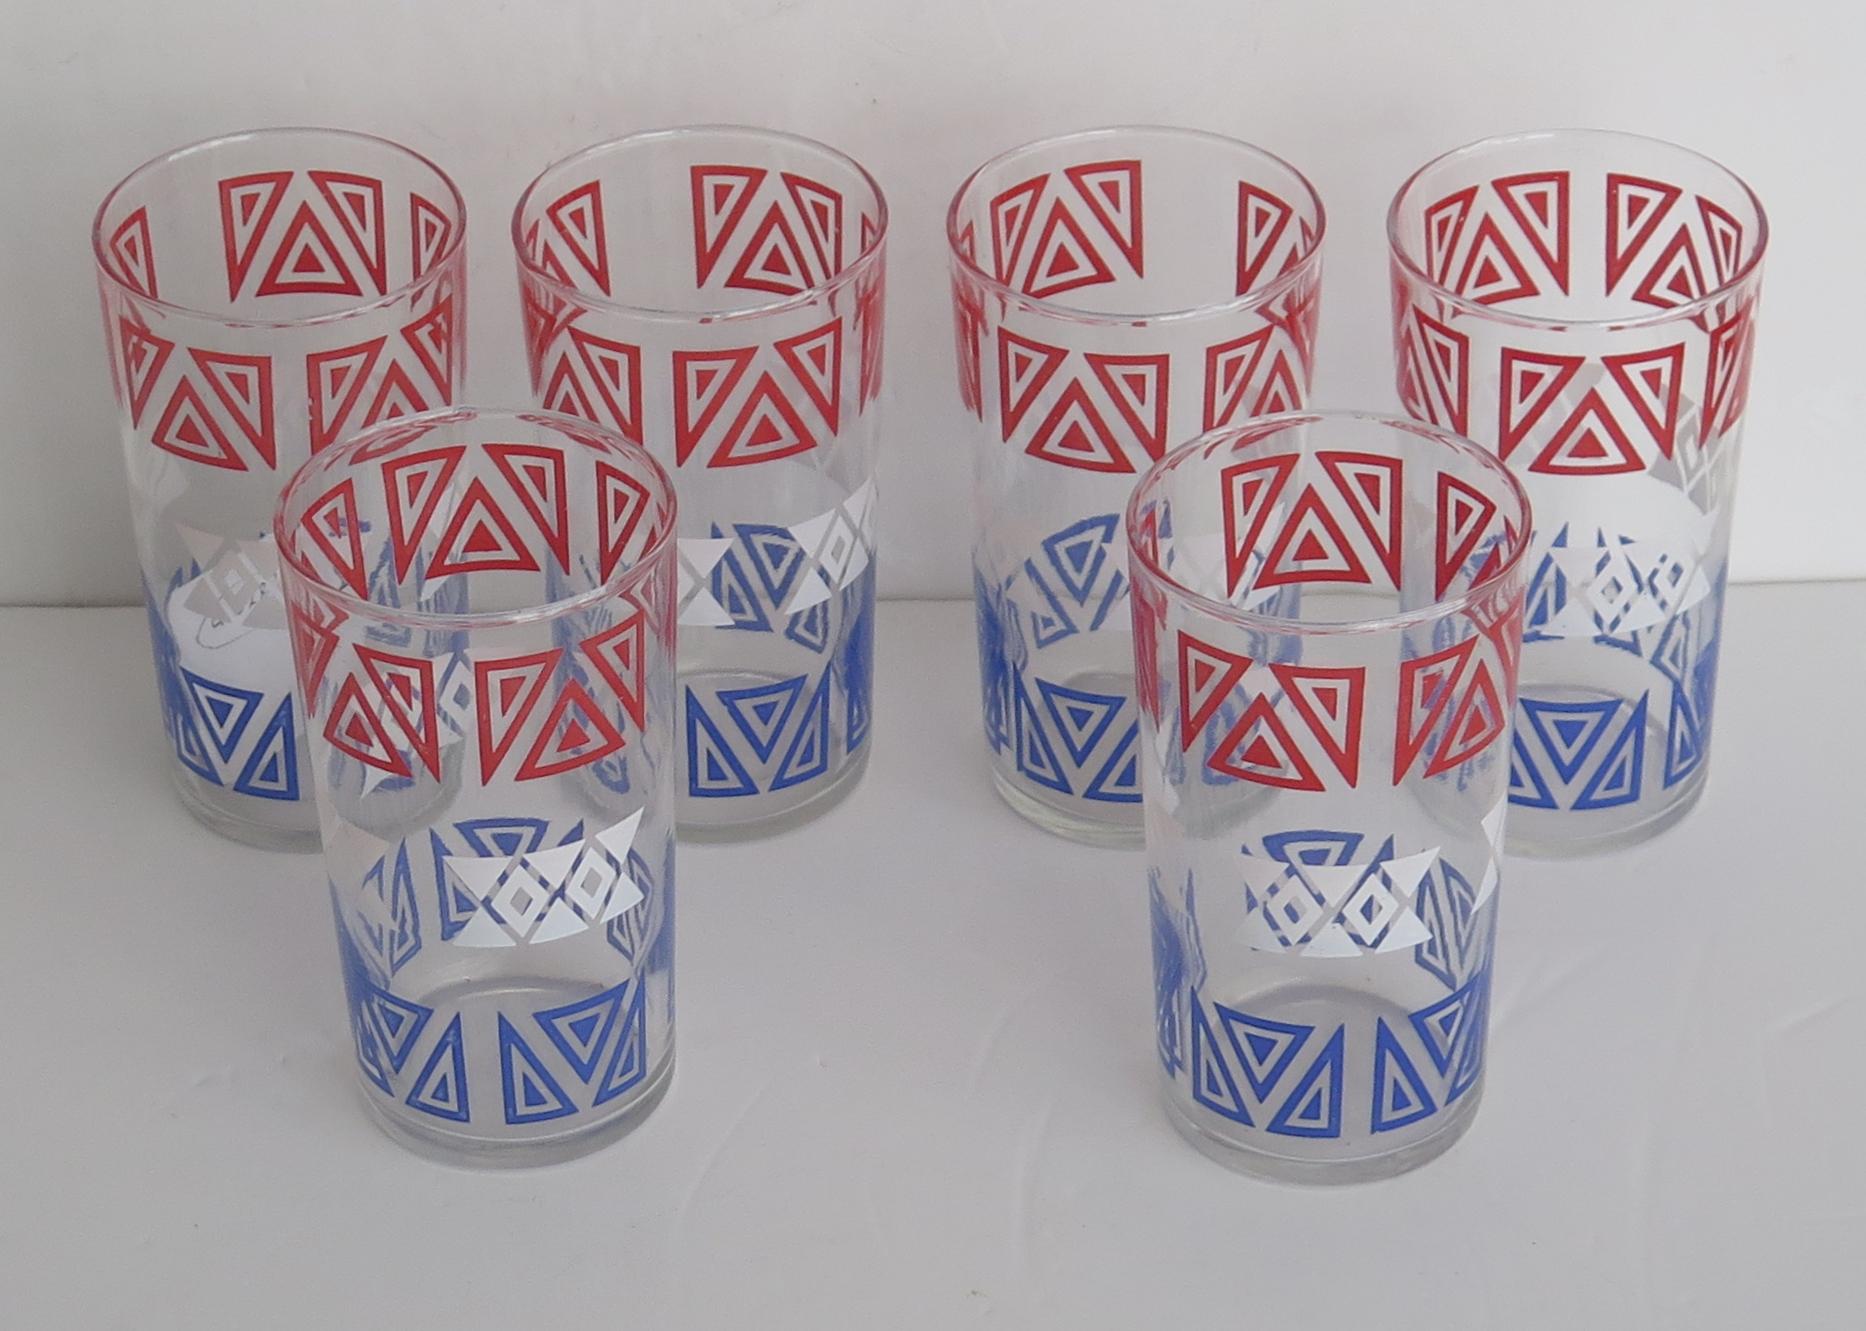 Il s'agit d'un bon ensemble de six gobelets ou verres à boire rétro ou Vintage, avec un motif géométrique rouge, blanc et bleu, datant de la période moderne du milieu du siècle dernier, vers les années 1950.

Chaque verre a une forme circulaire